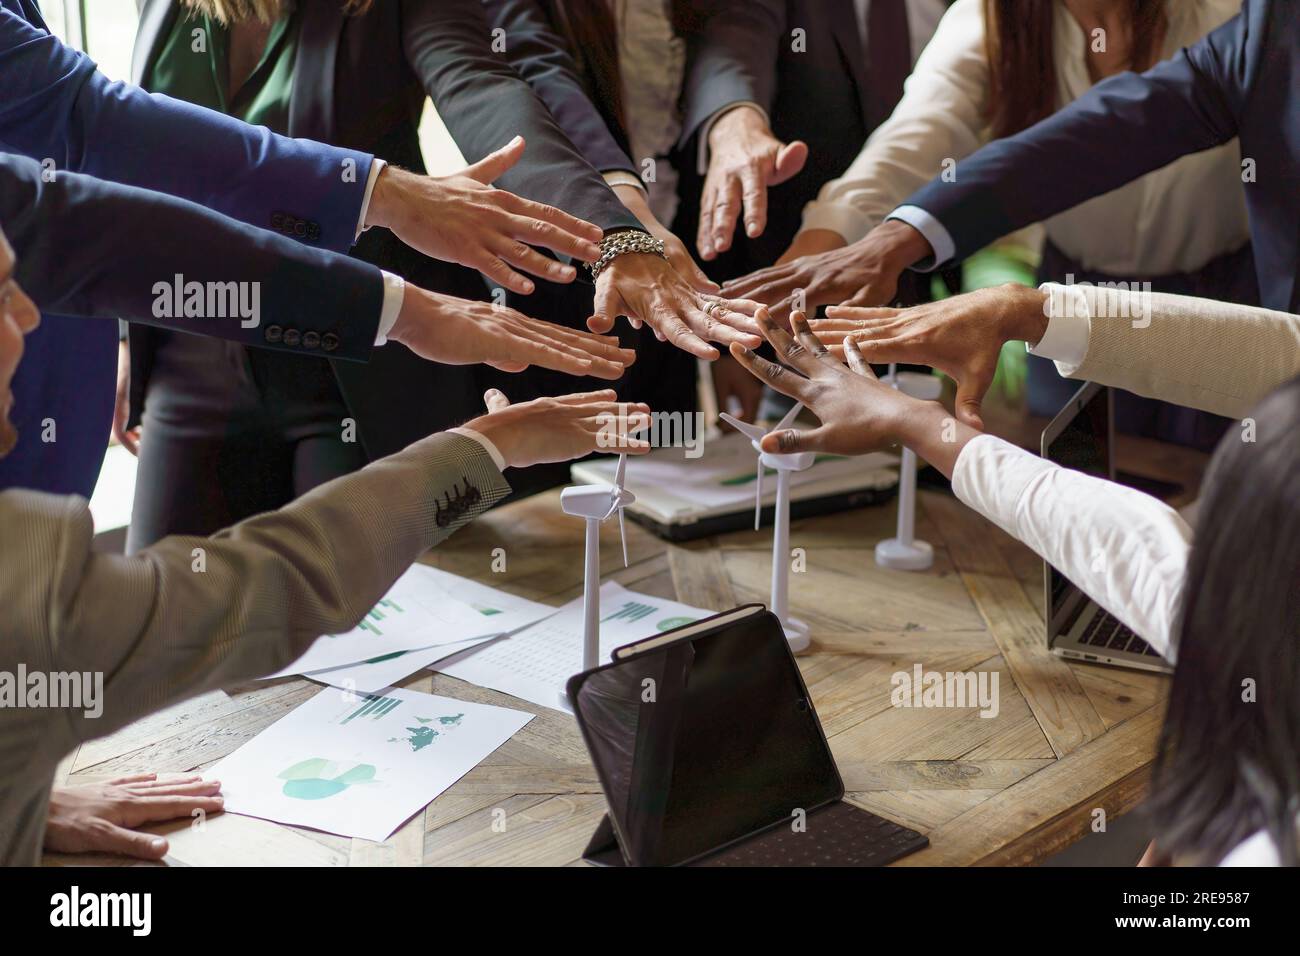 Il team multietnico raccoglie le mani sopra un tavolo disseminato di grafici e modelli di turbine eoliche, a significare vittoria e collaborazione in un'energia rinnovabile Foto Stock